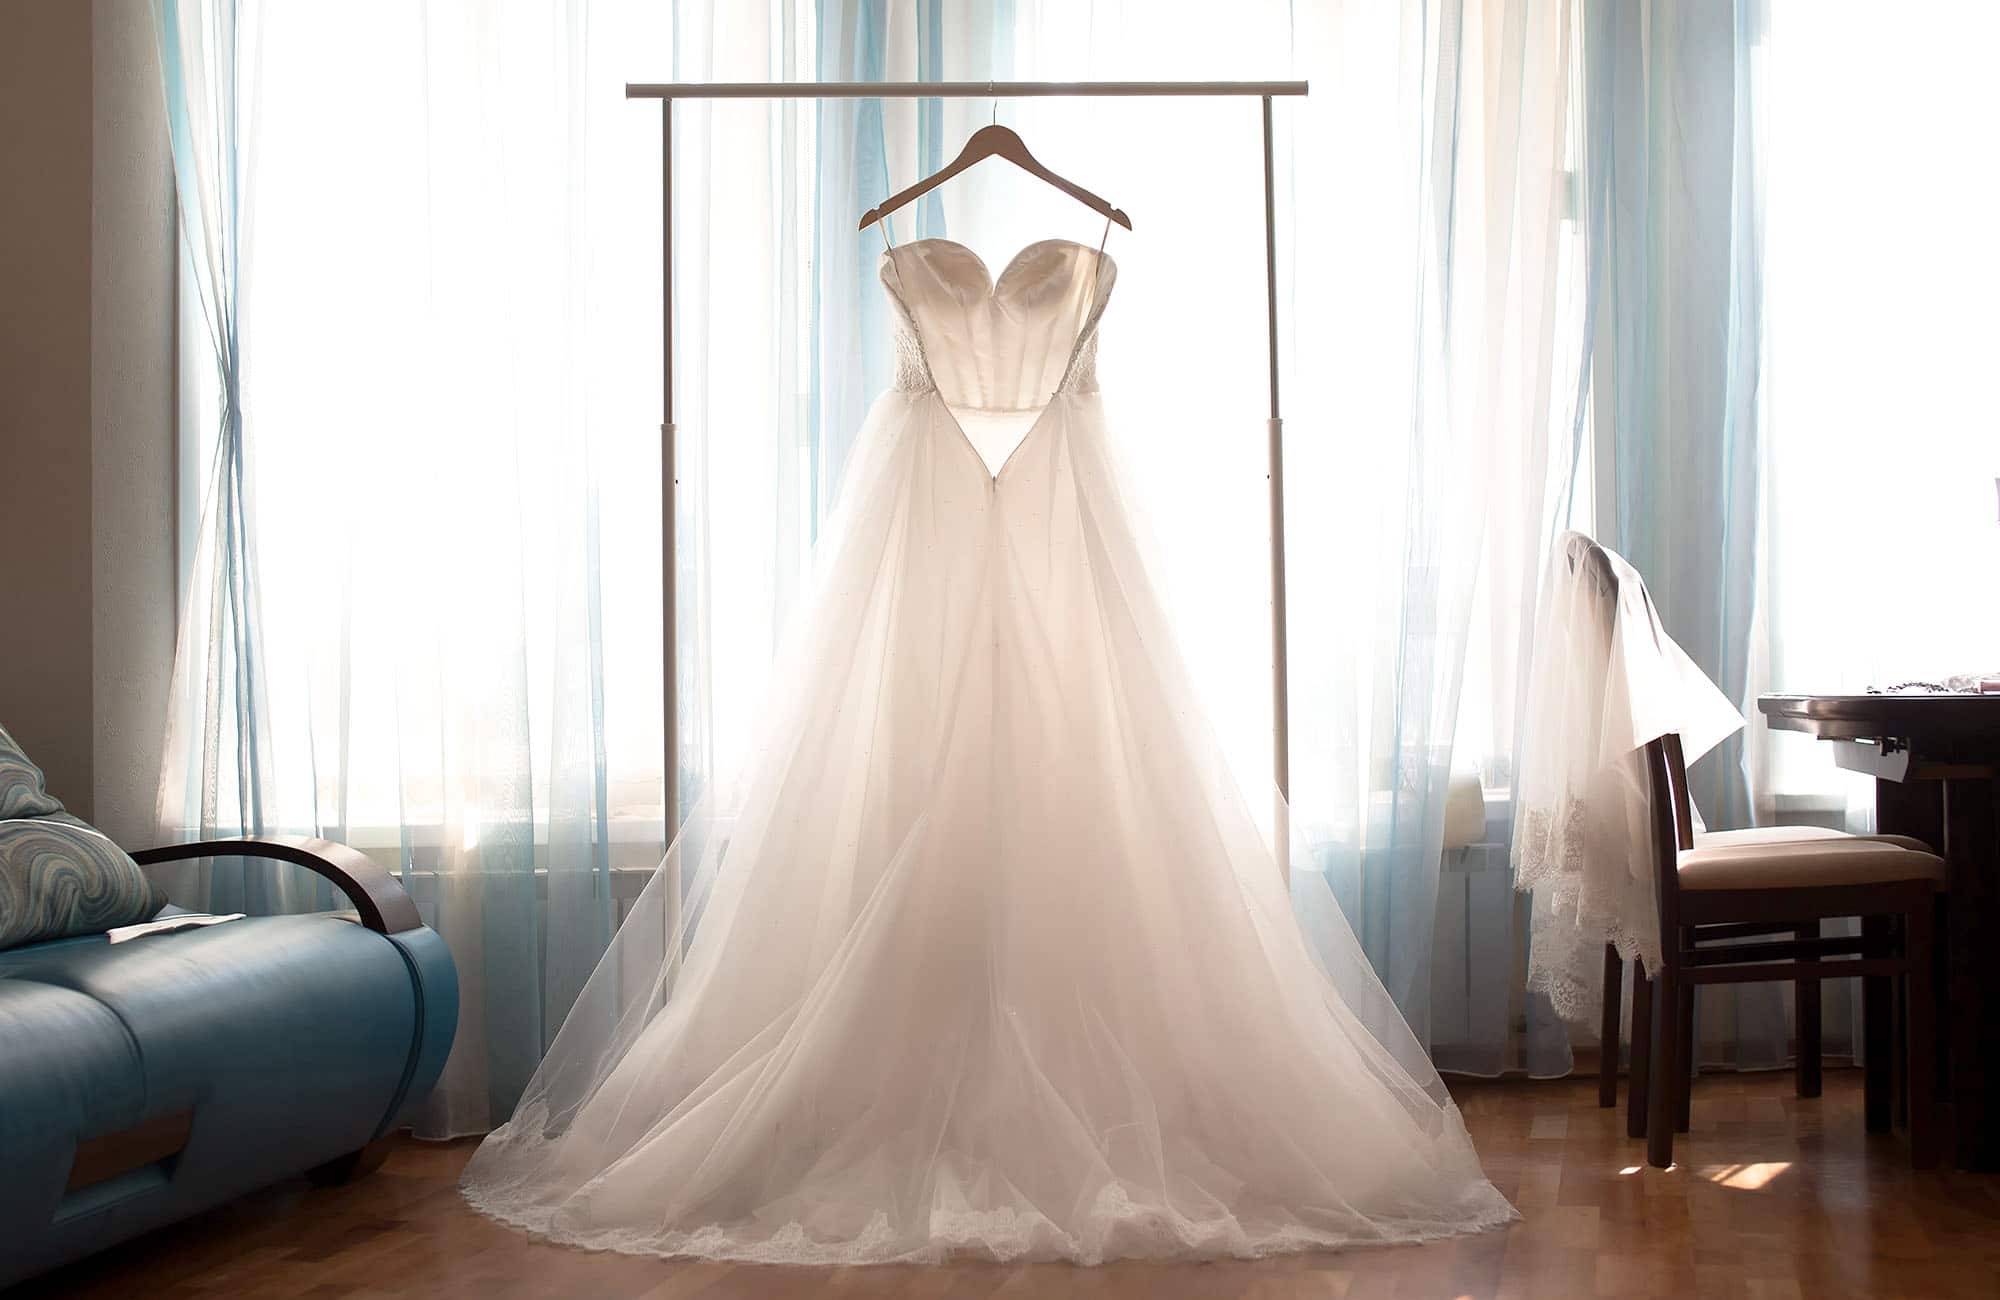 Tiulowa suknia ślubna wisząca na wieszaku na tle okna